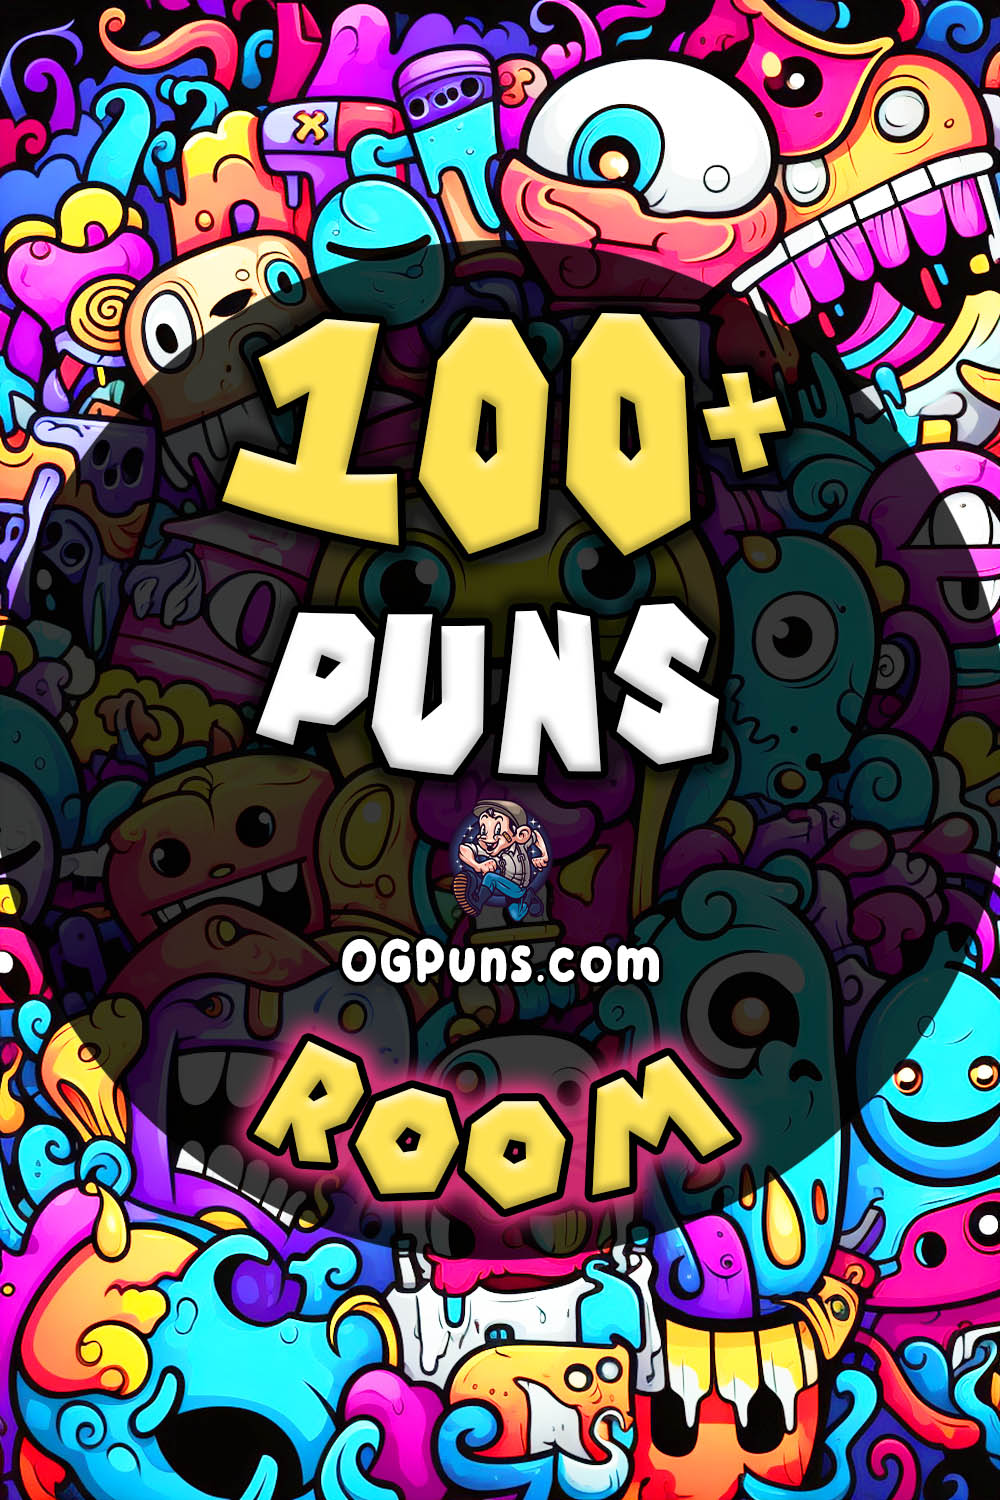 Pin a Room puns